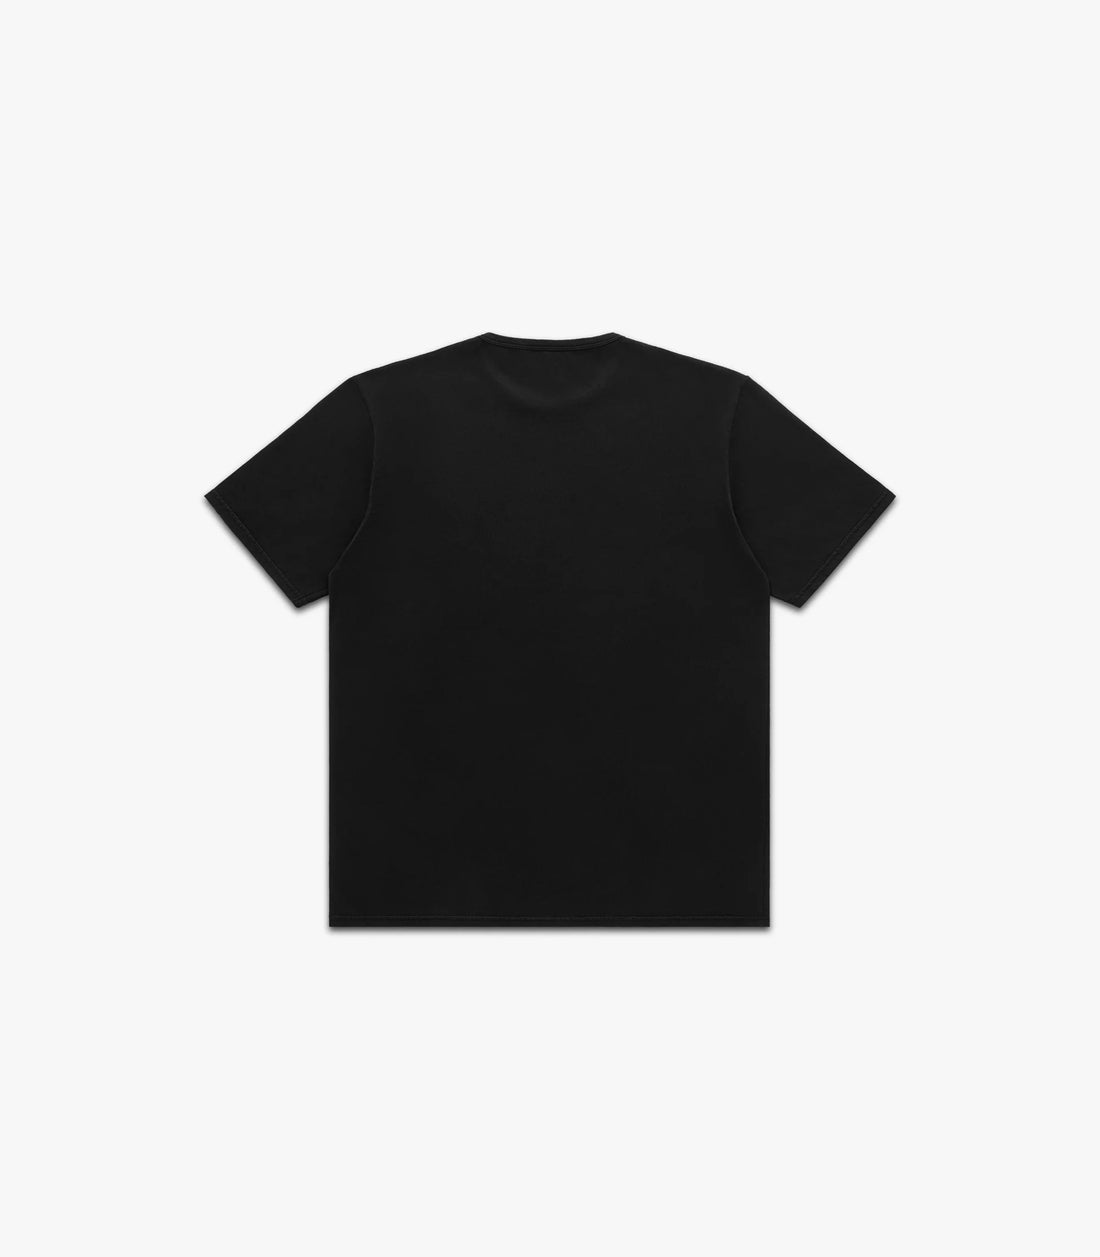 Knickerbocker - T-Shirt - Black